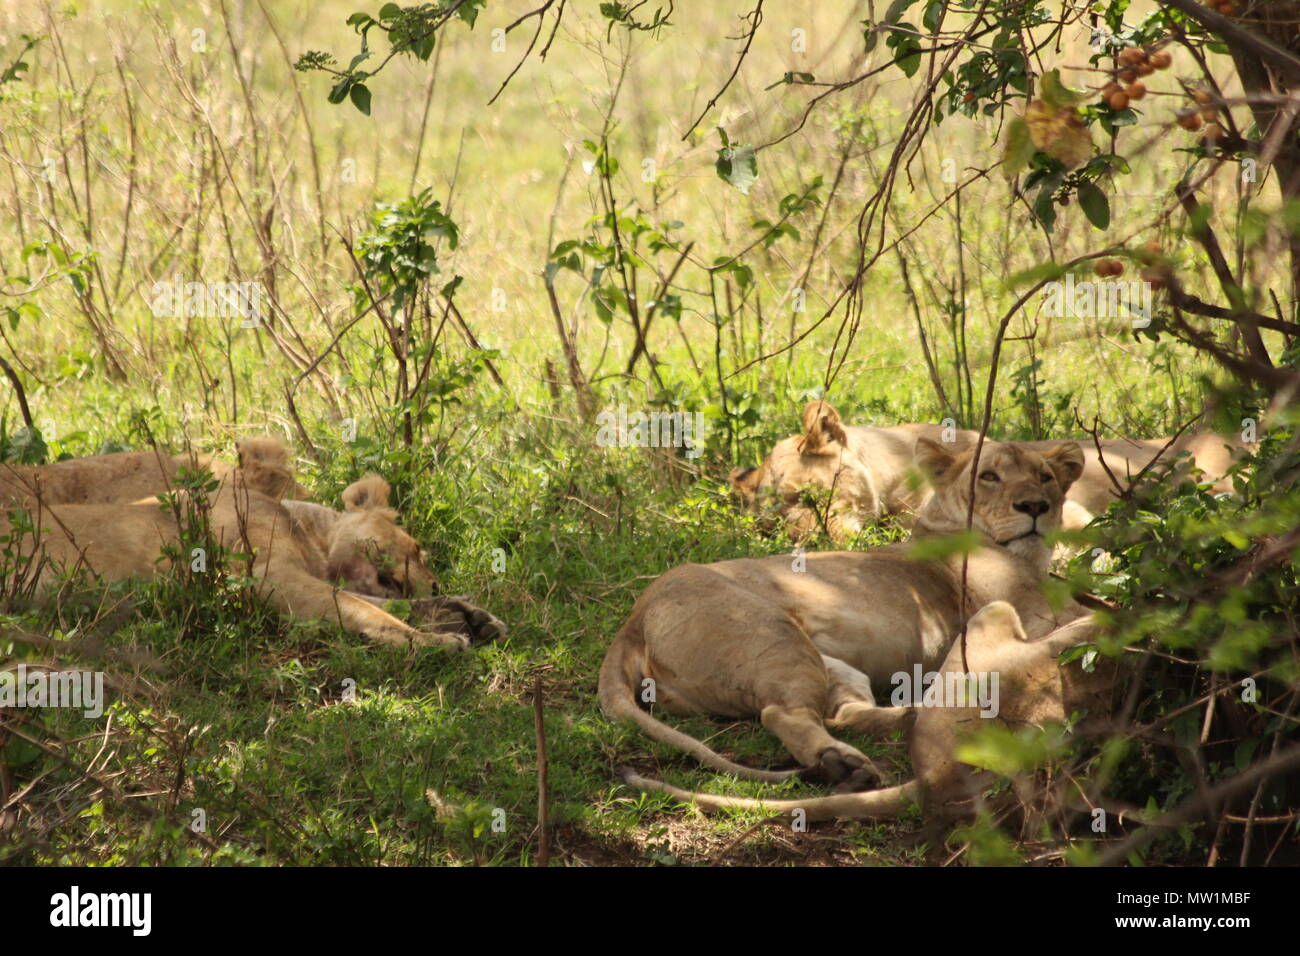 Pack de hembras de leones descansando entre la hierba Foto de stock